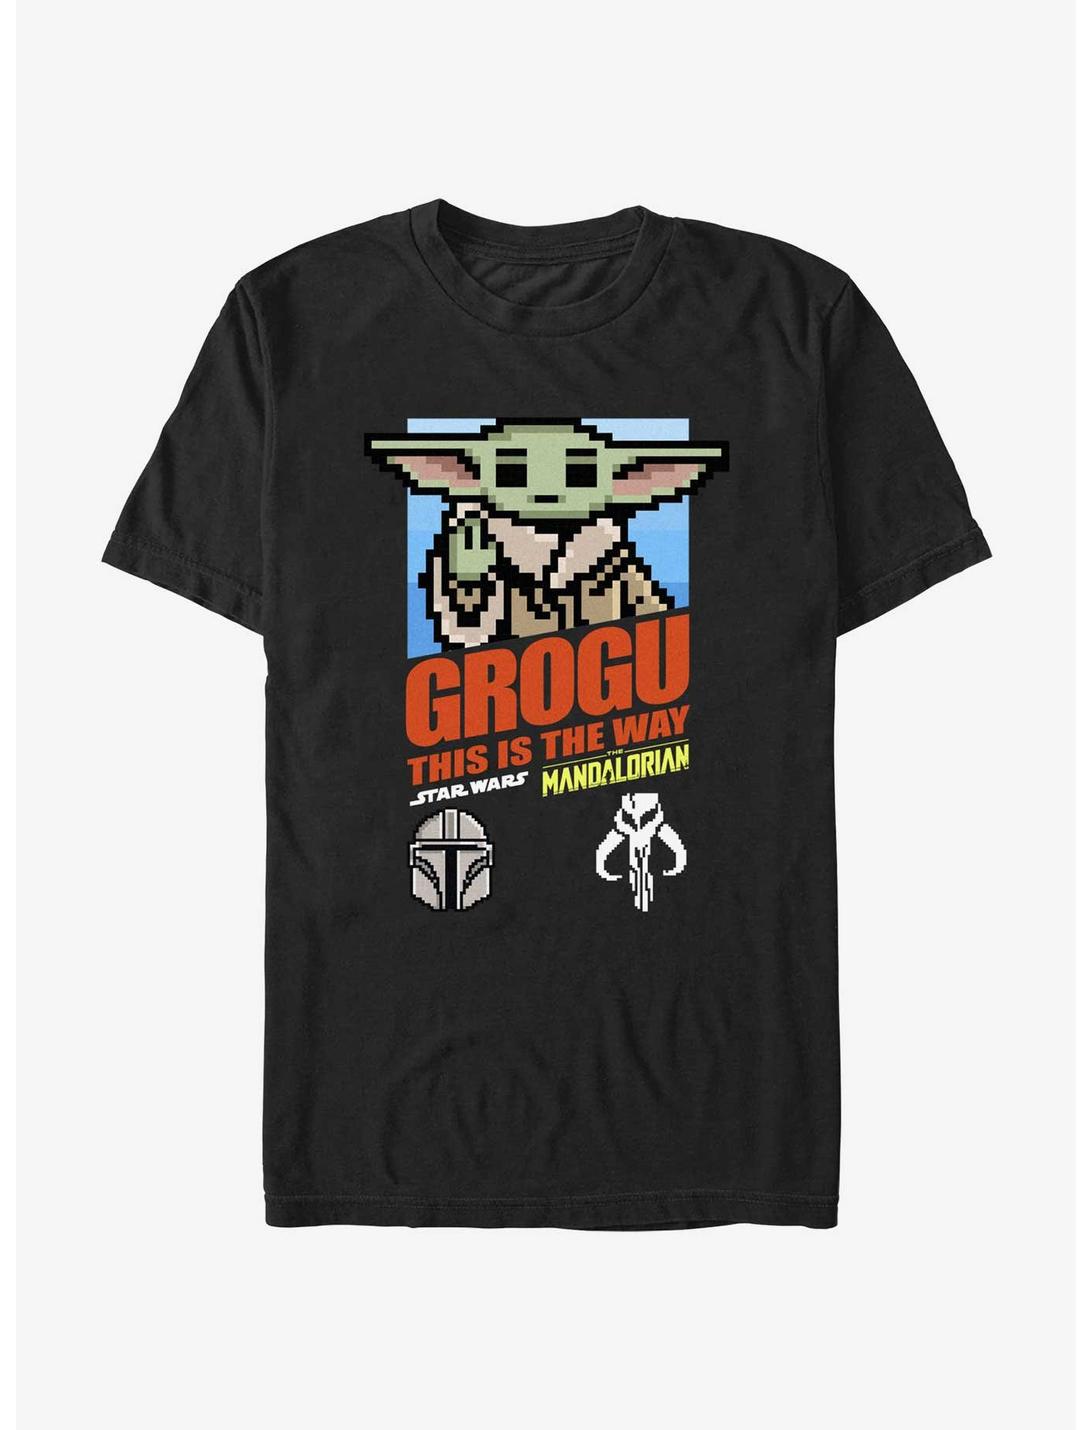 Star Wars The Mandalorian 8-Bit Grogu Game T-Shirt, BLACK, hi-res